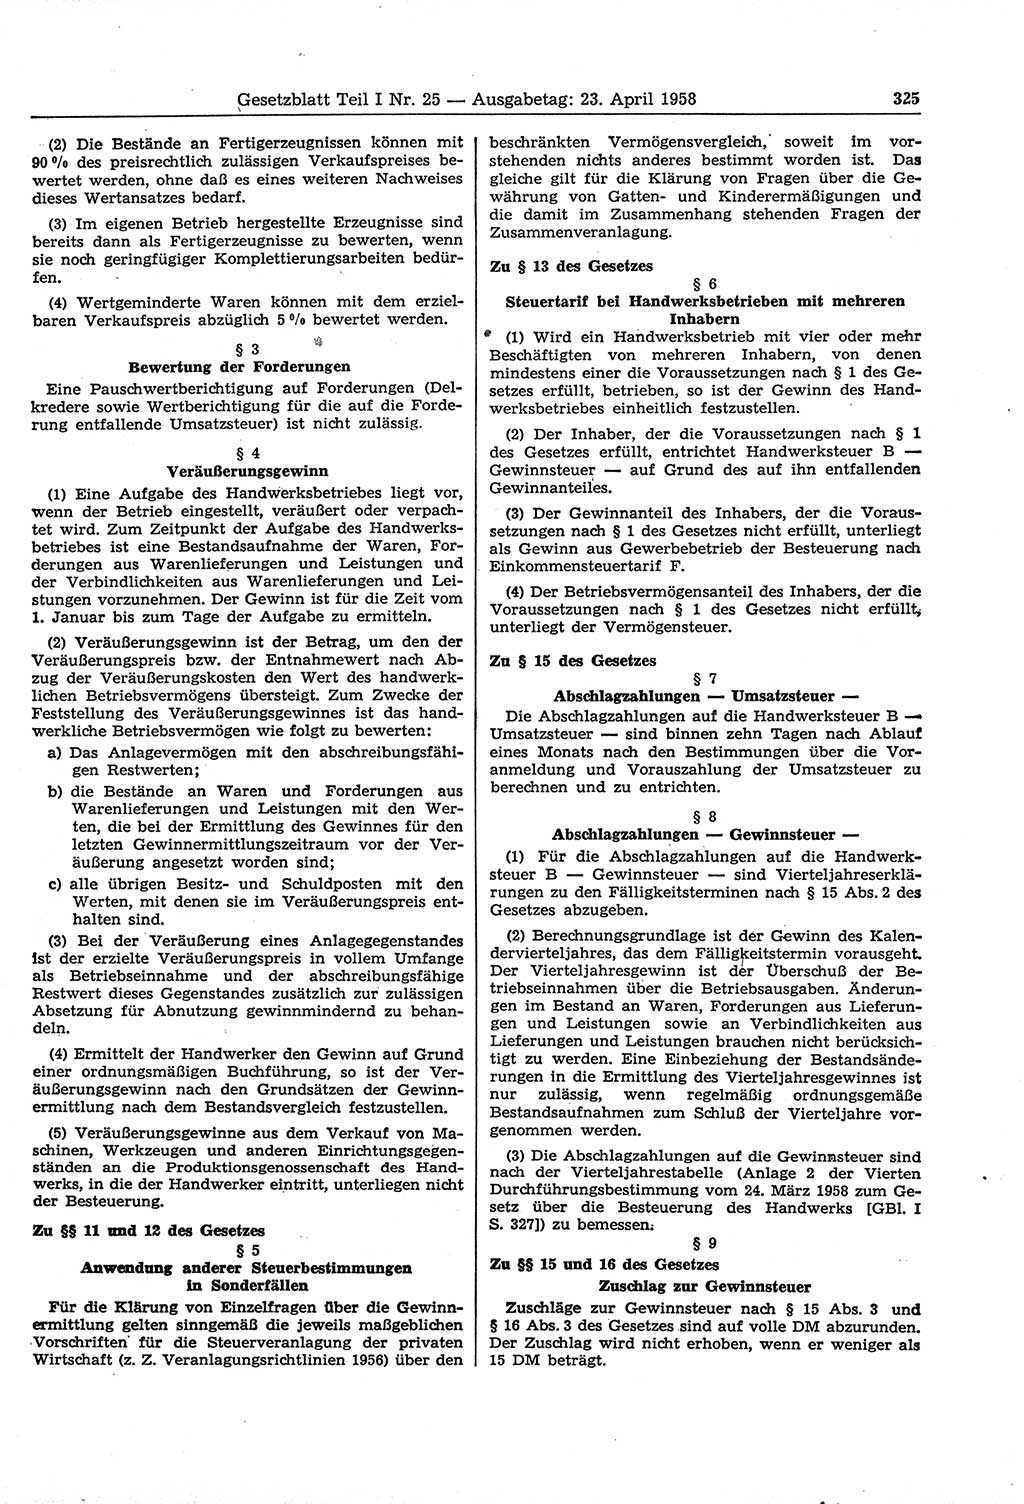 Gesetzblatt (GBl.) der Deutschen Demokratischen Republik (DDR) Teil Ⅰ 1958, Seite 325 (GBl. DDR Ⅰ 1958, S. 325)